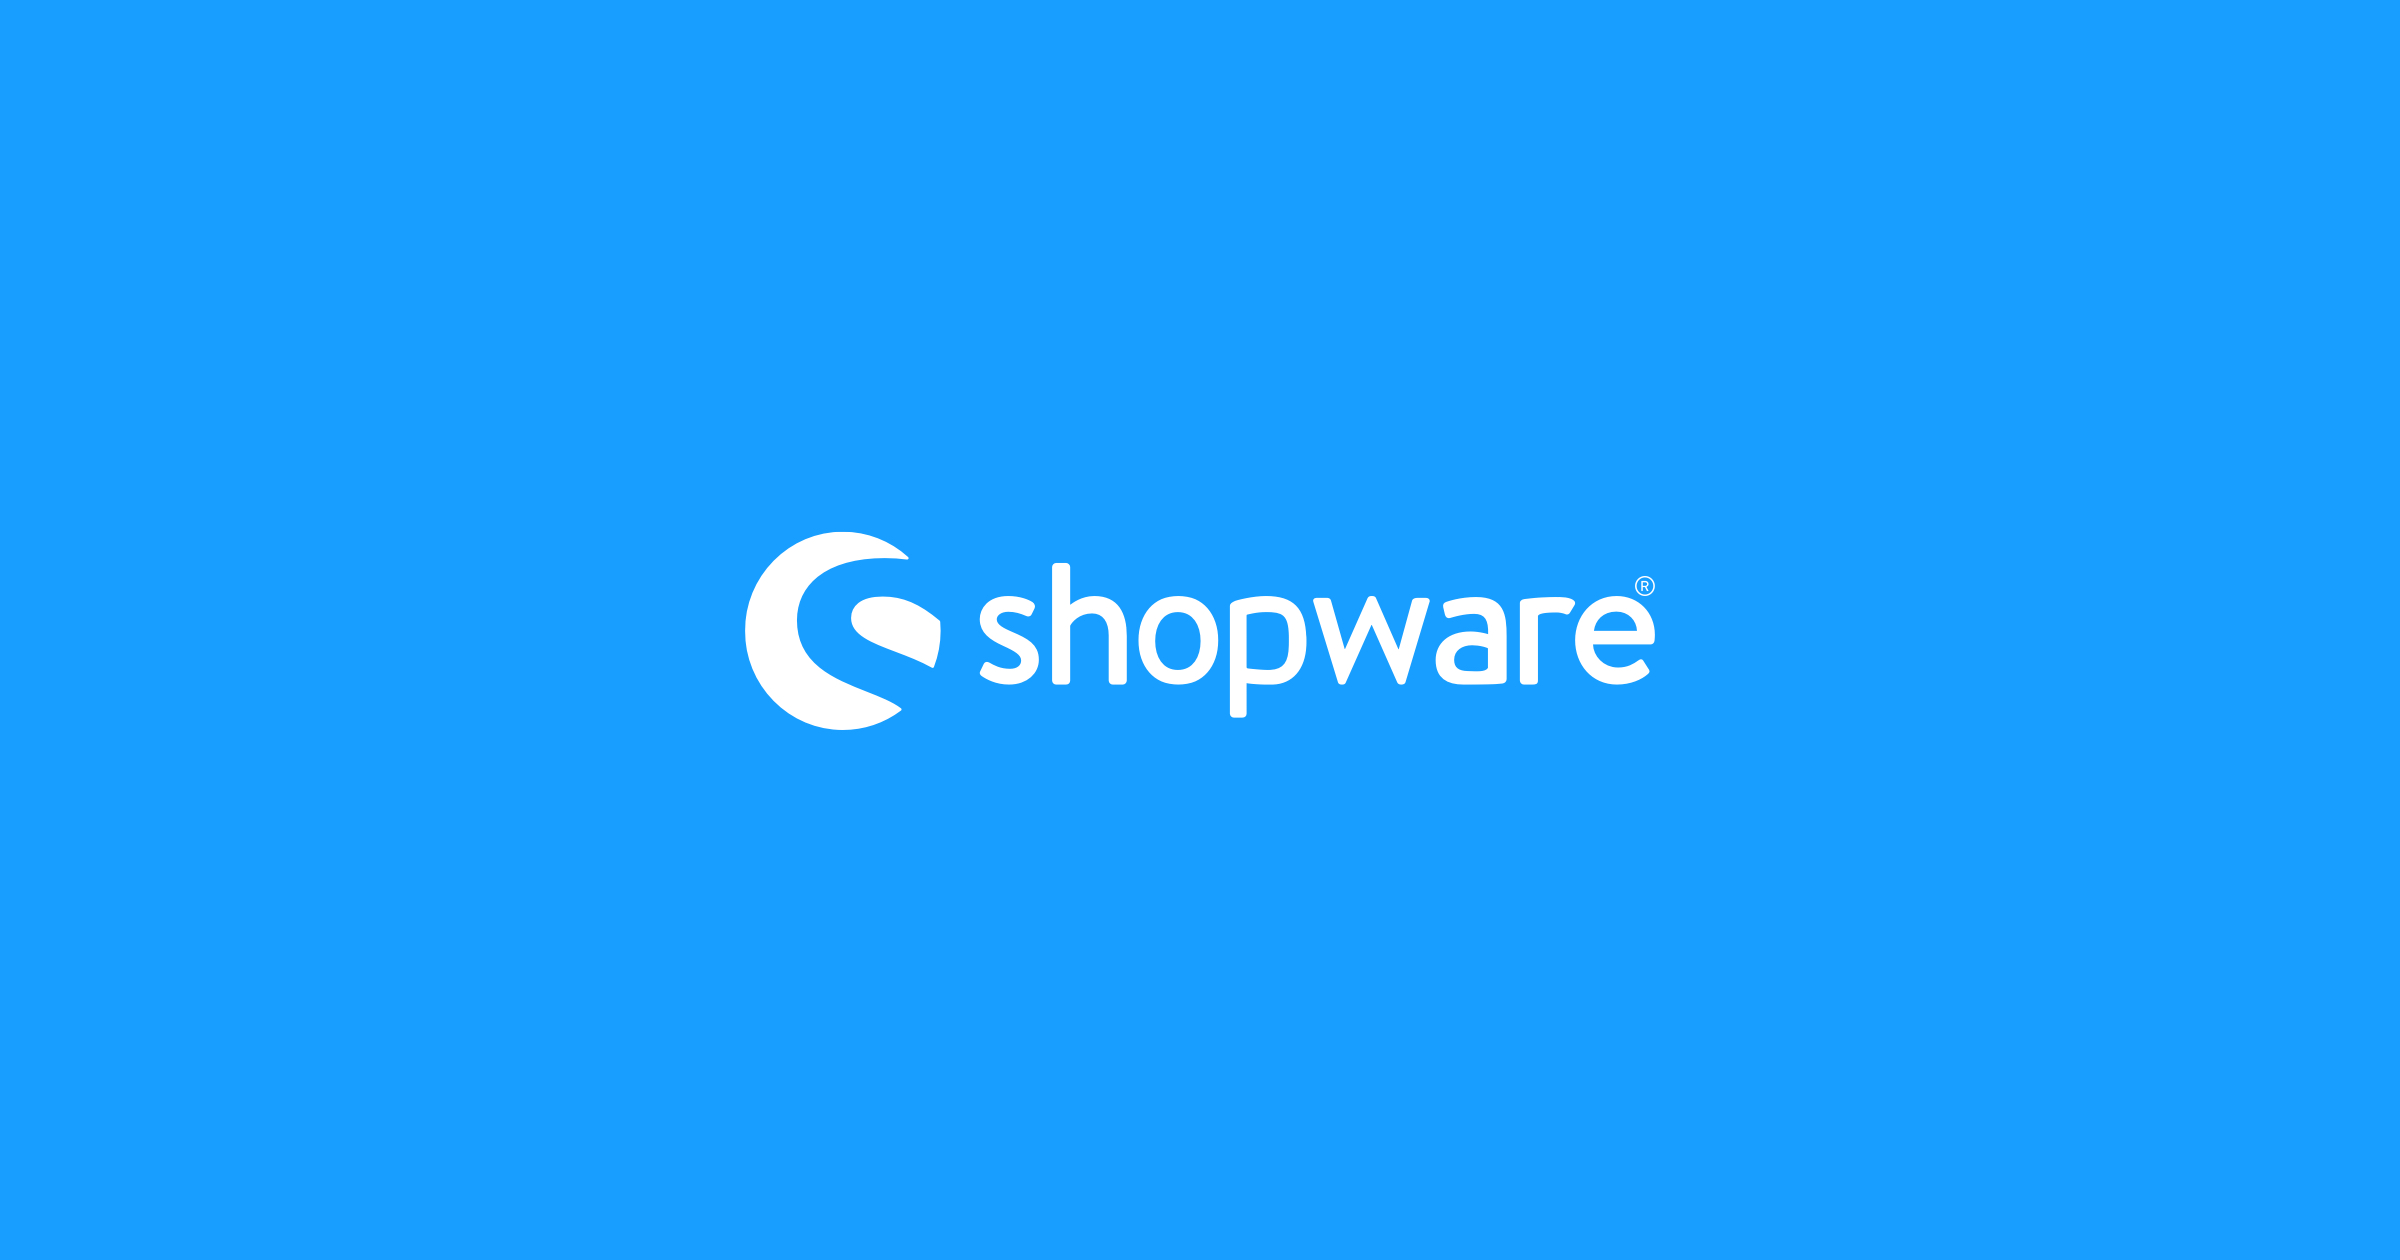 Shopware shopping cart software